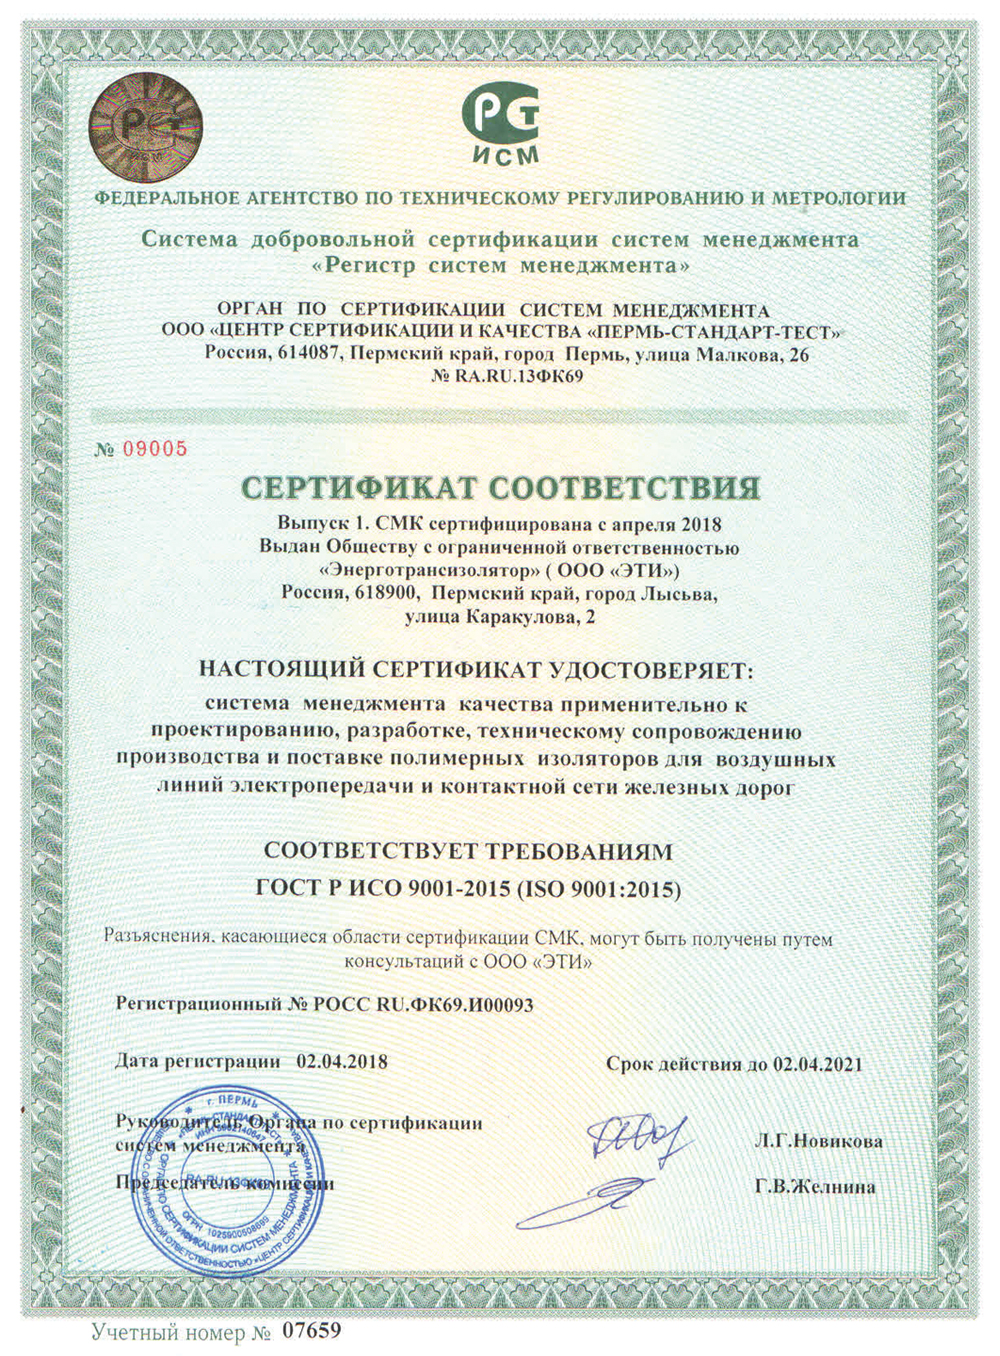 Система менеджмента качества с 2005 года сертифицирована на соответствие требованиям ГОСТ Р ИСО 9001-2015 (ISO 9001:2015).